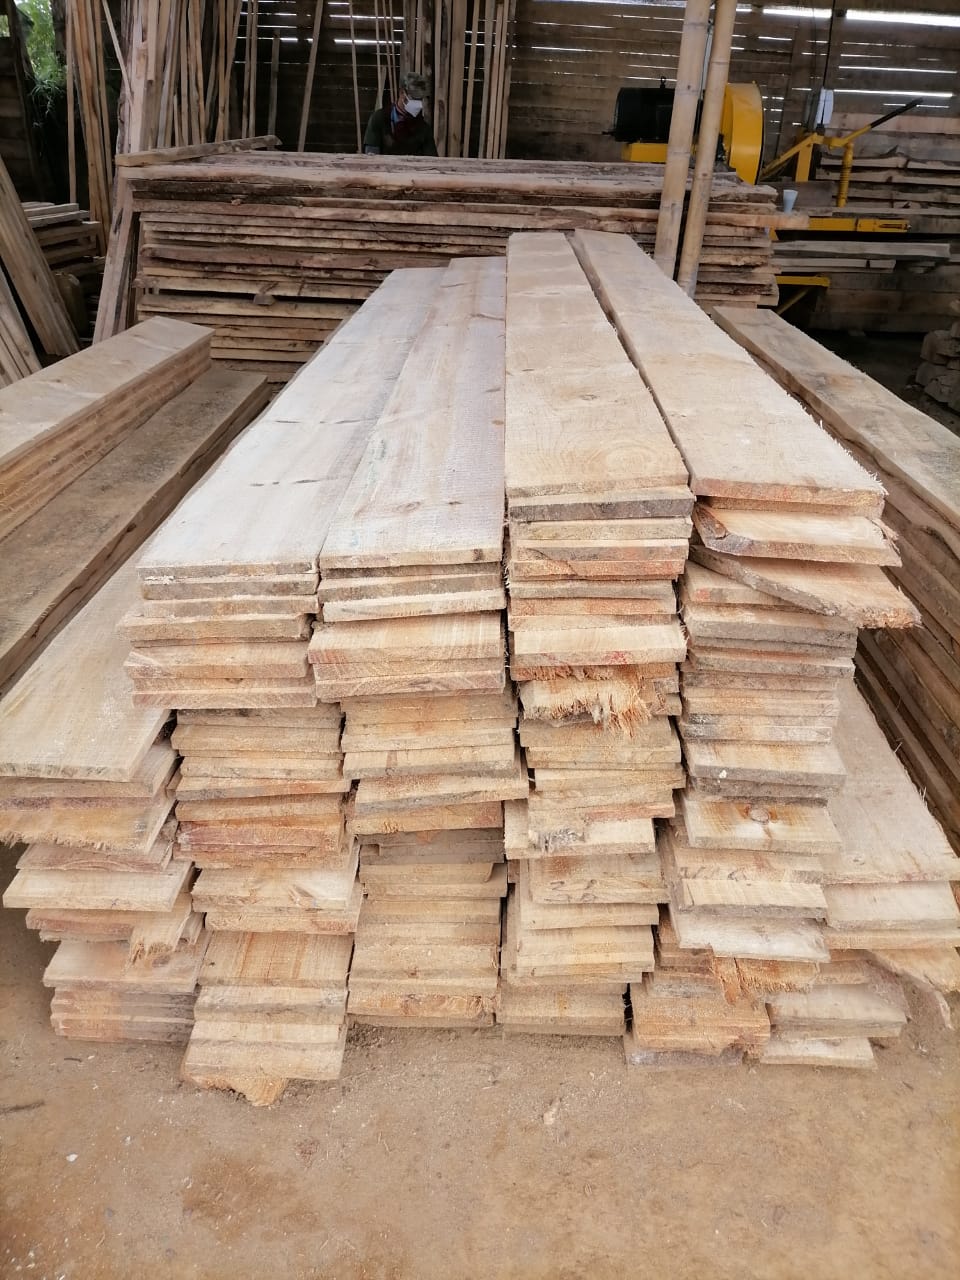 Fondo de tablas de madera de pino.